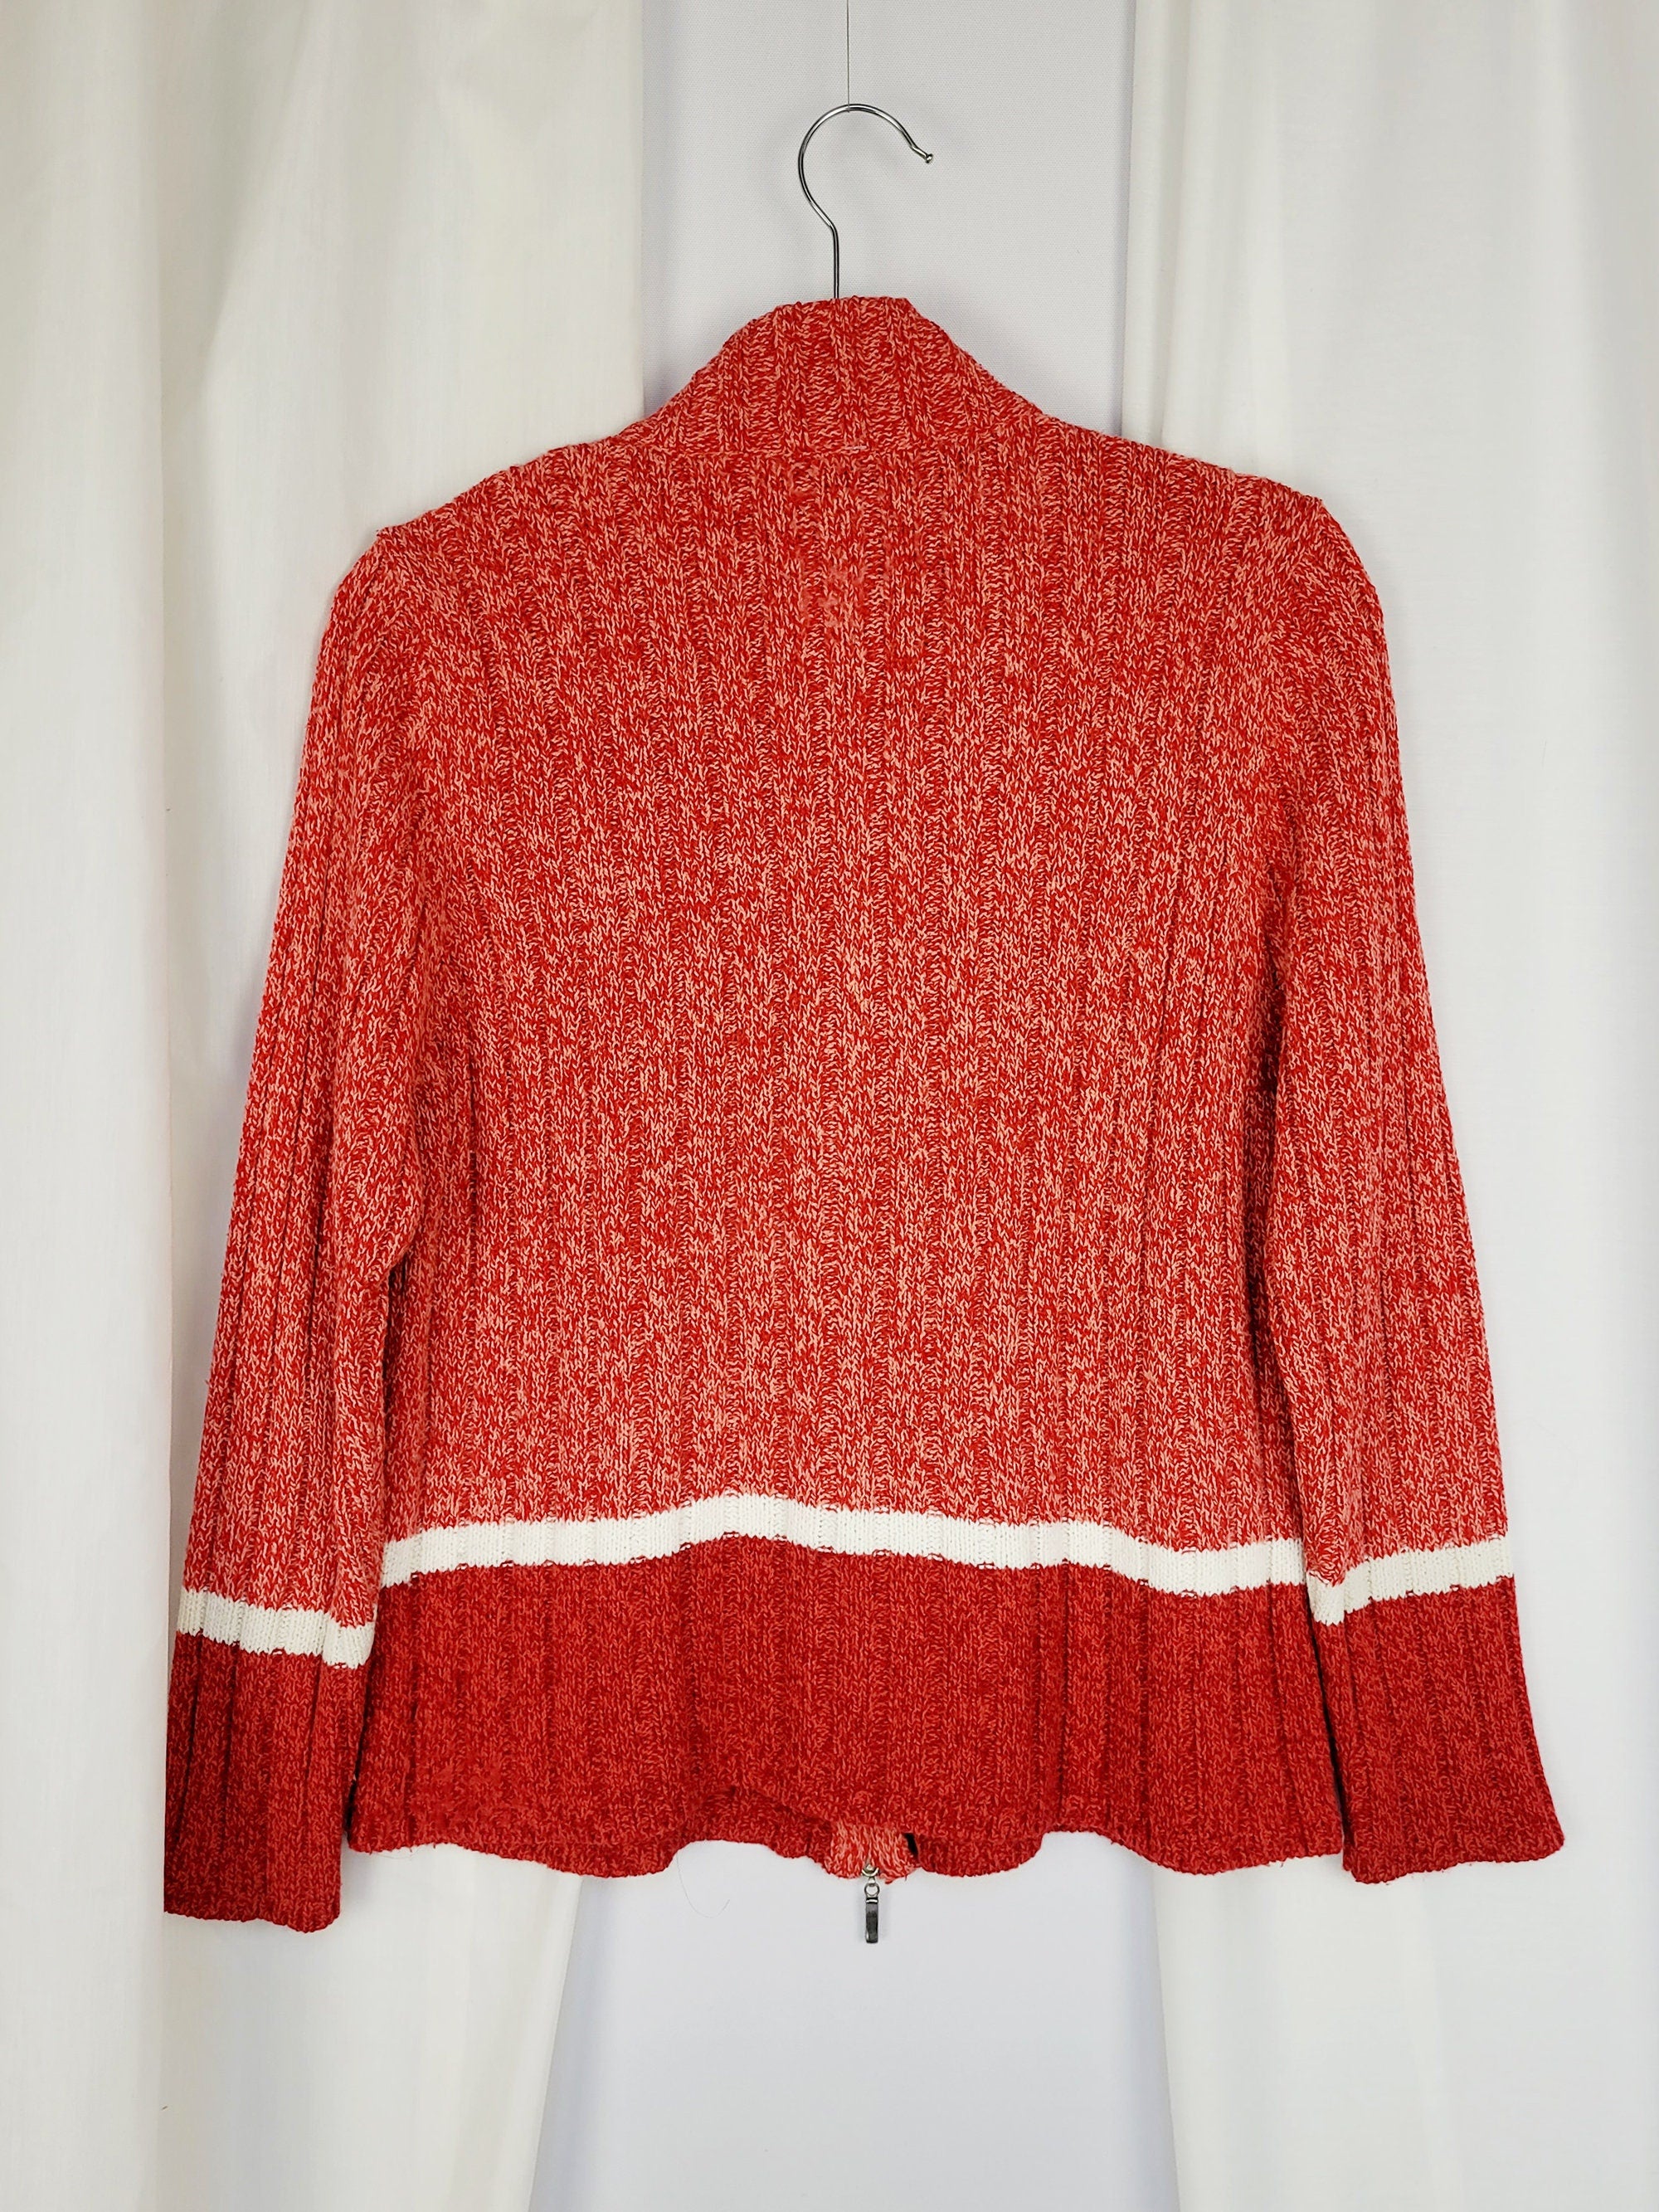 90s pink red jazzy knit minimalist prep grunge zip cardigan